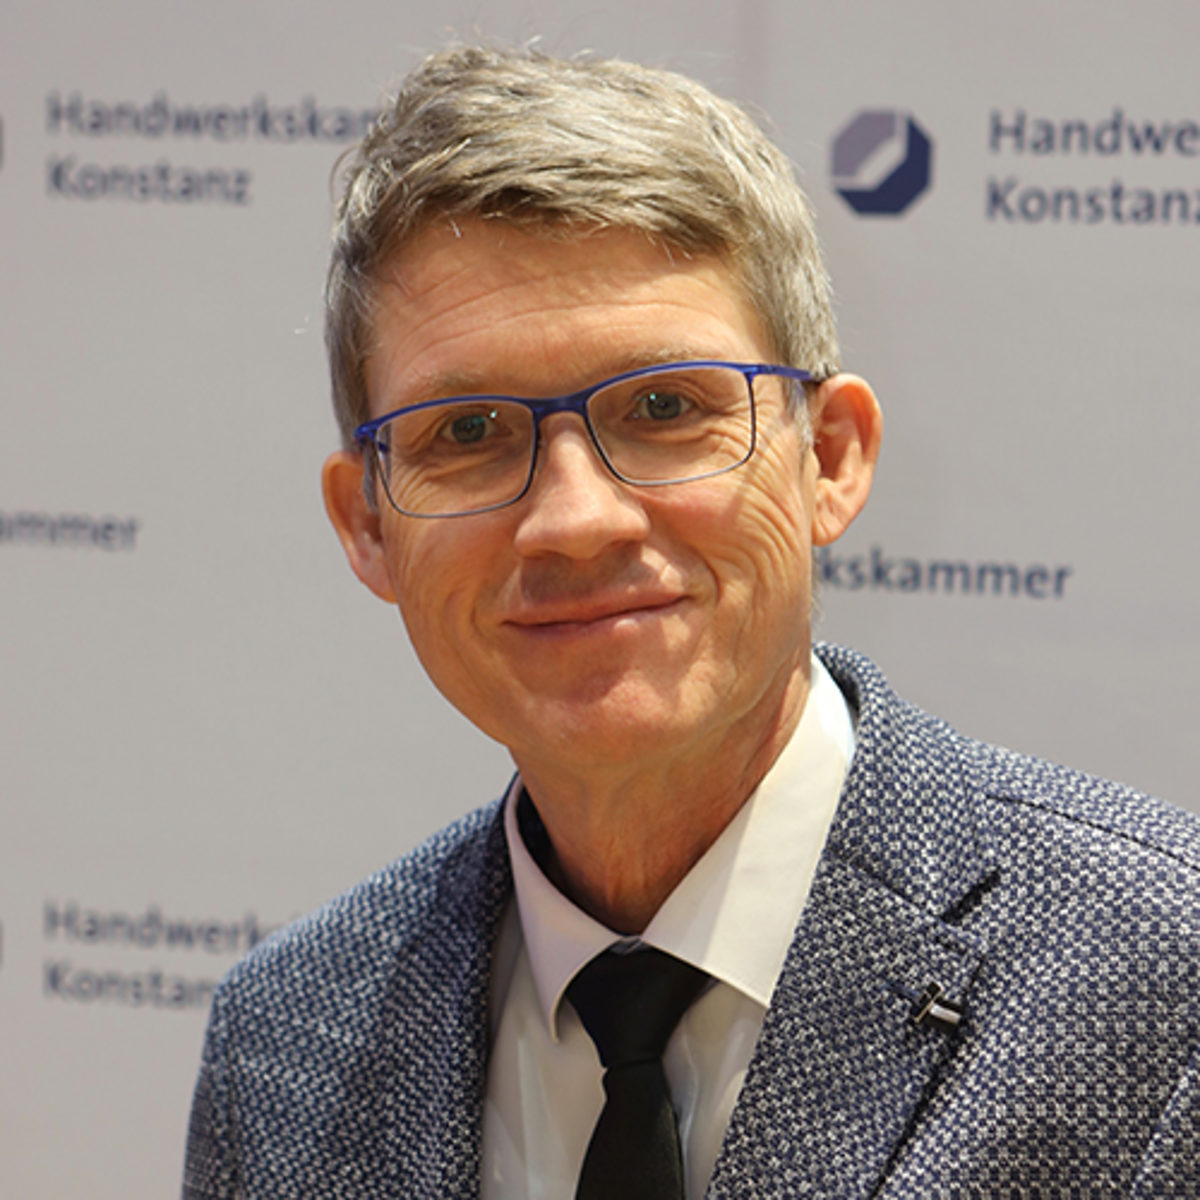 Porträt von Ulrich Binder, Mitglied im Vorstand der Handwerkskammer Konstanz